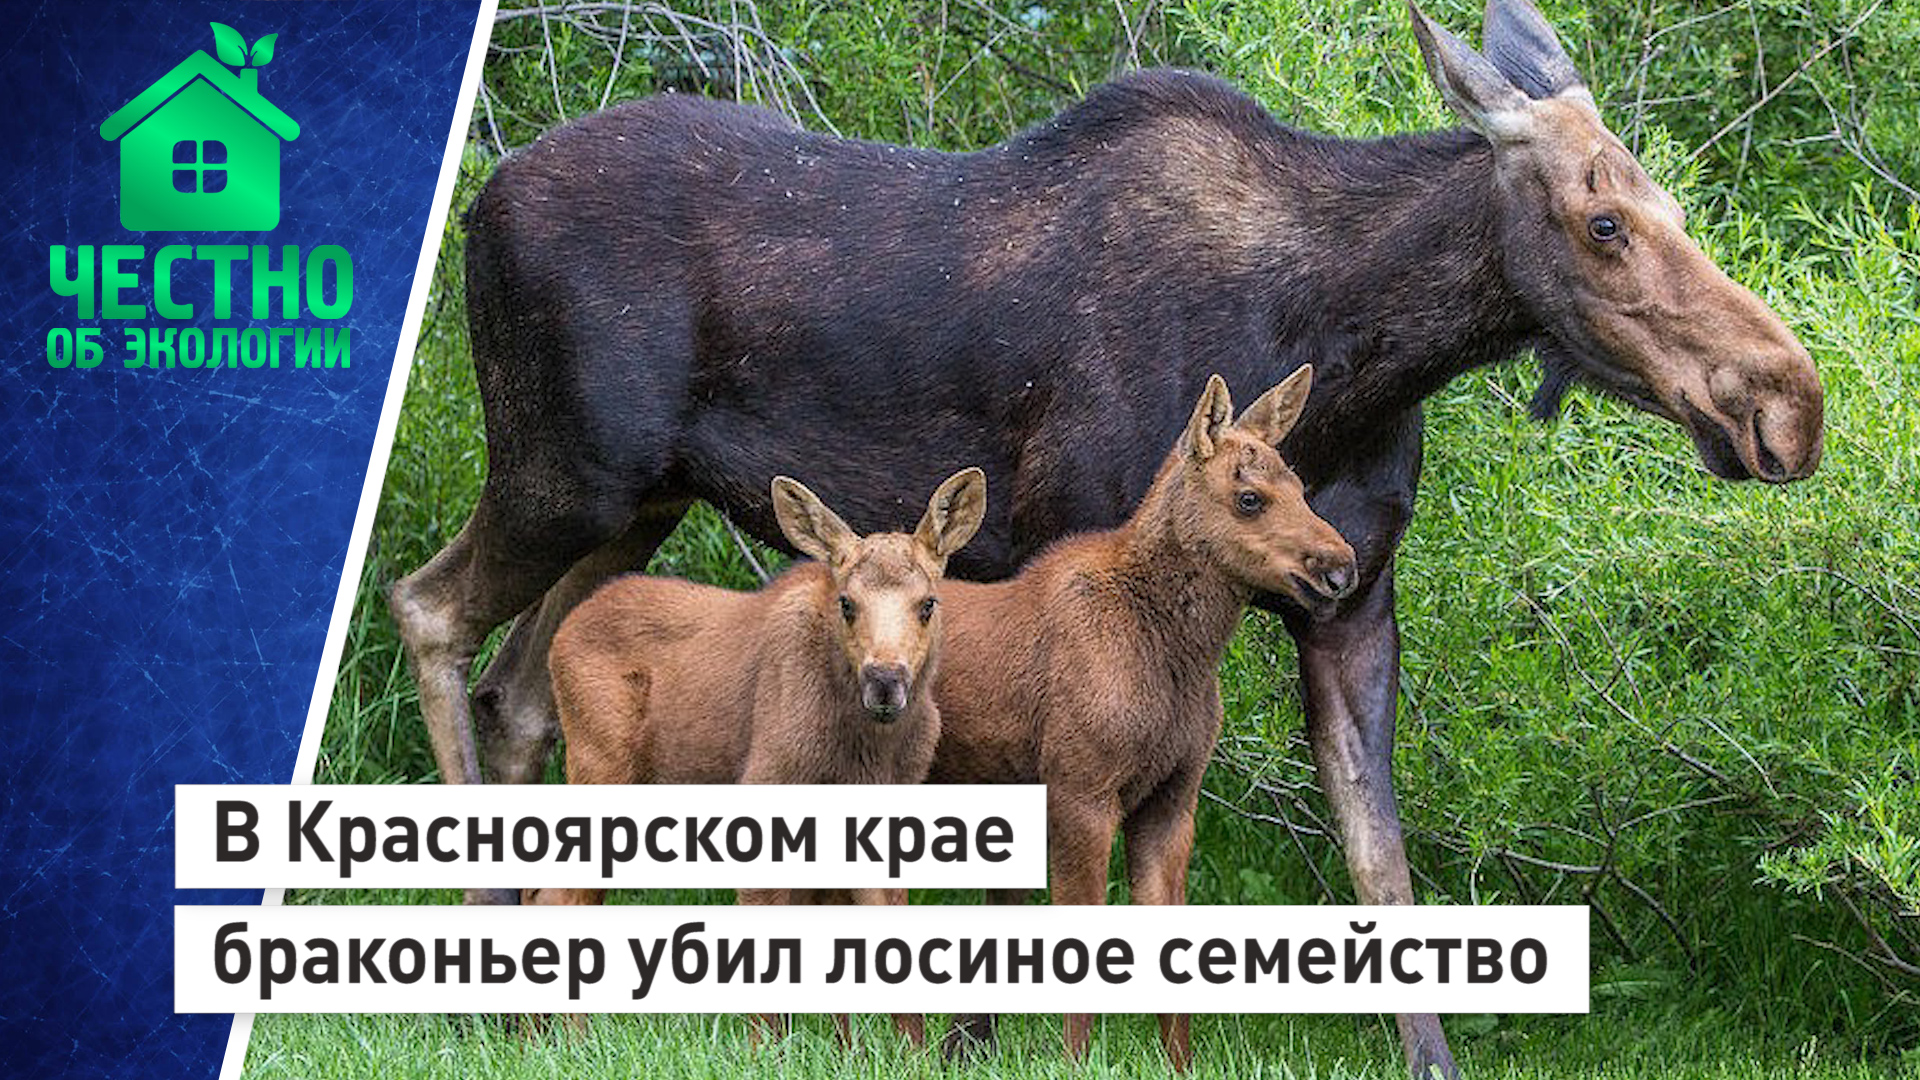 В Красноярском крае браконьер убил лосиное семейство.